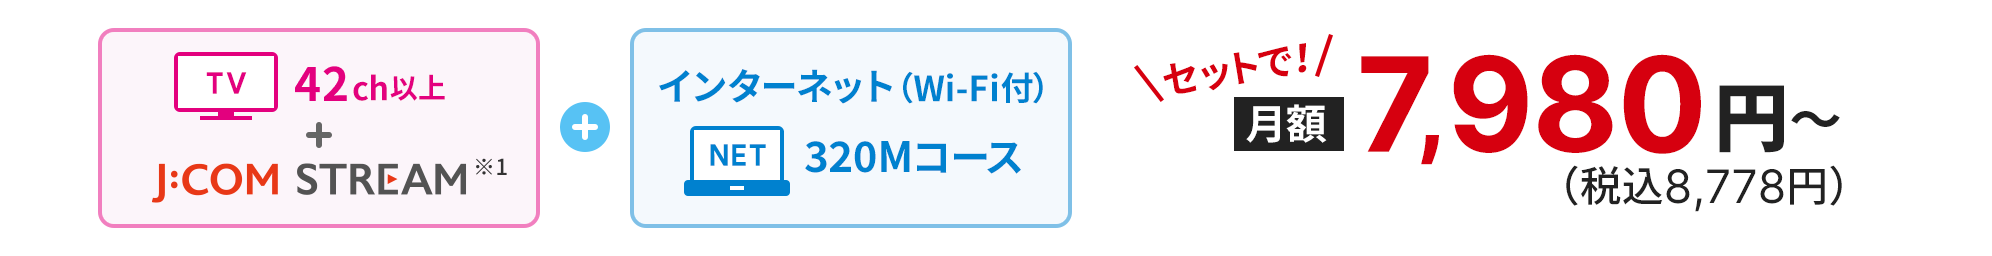 インターネット（Wi-Fi付）320Mコース+専門チャンネル90ch以上 セットで！月額7,980円（税込8,778円）